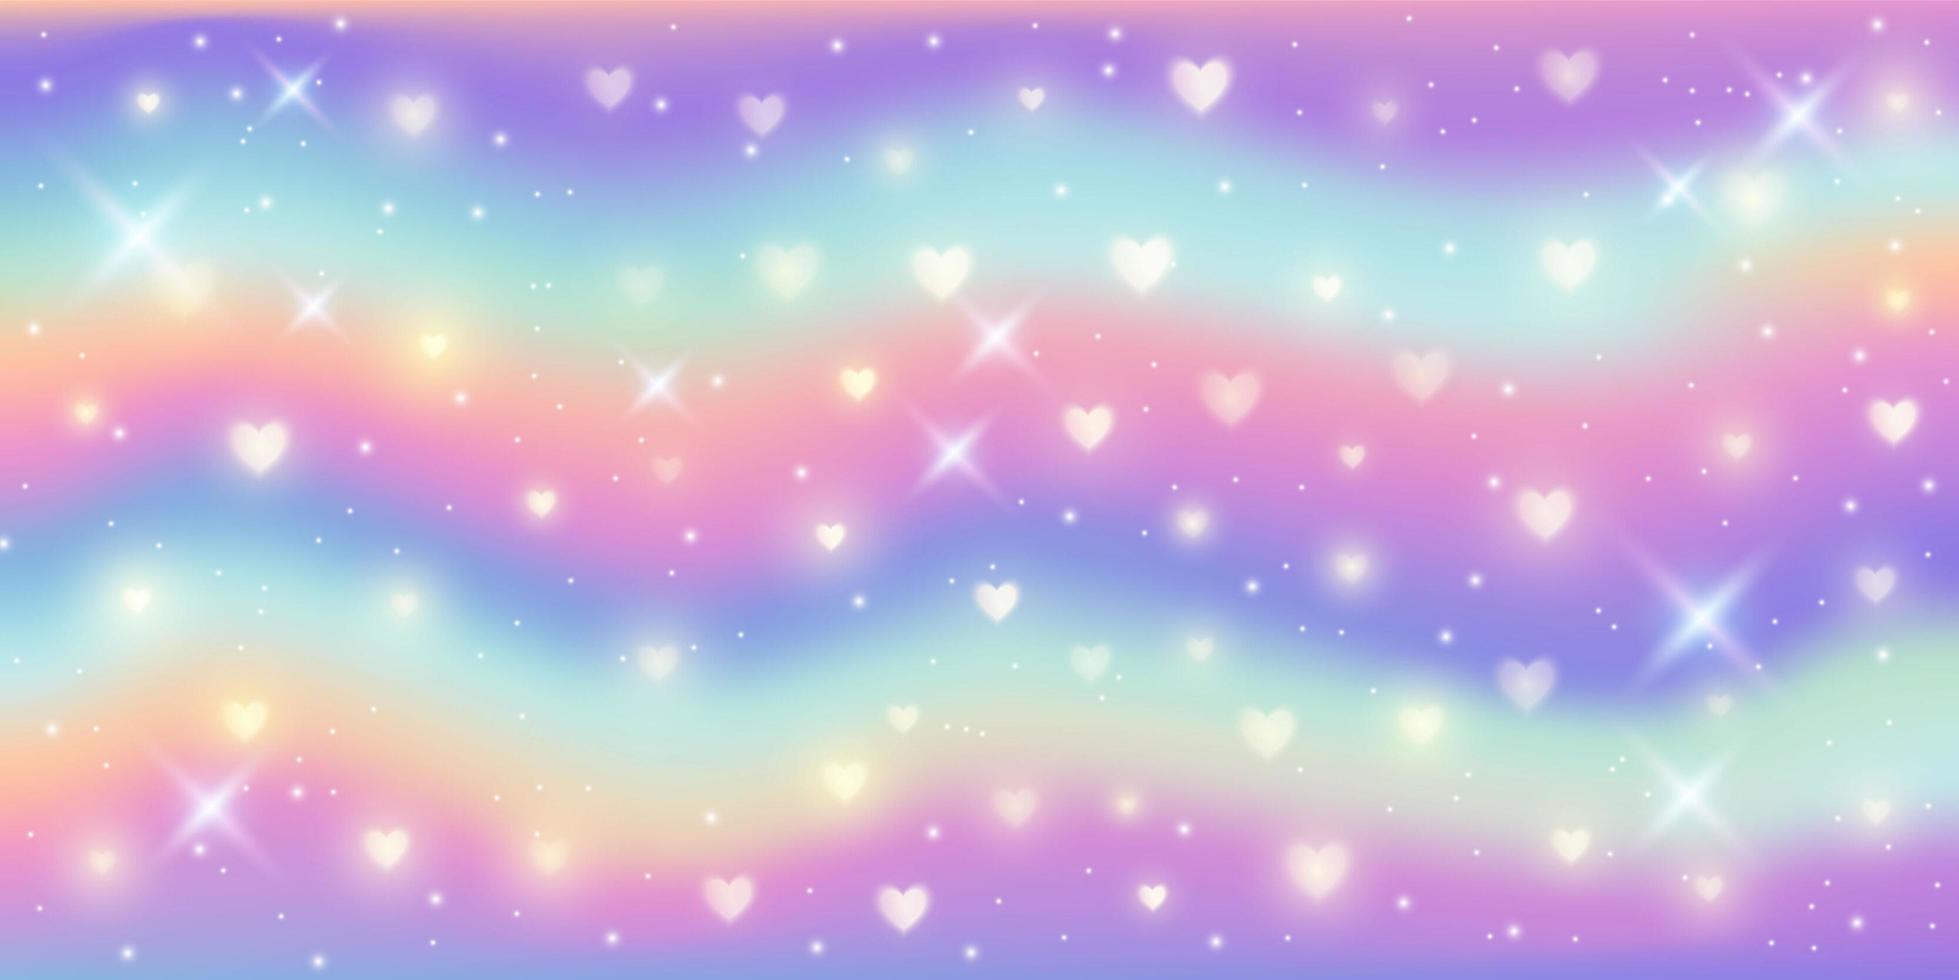 fond de fantaisie. motif aux couleurs pastel. ciel multicolore ondulé avec des étoiles et des coeurs. vecteur